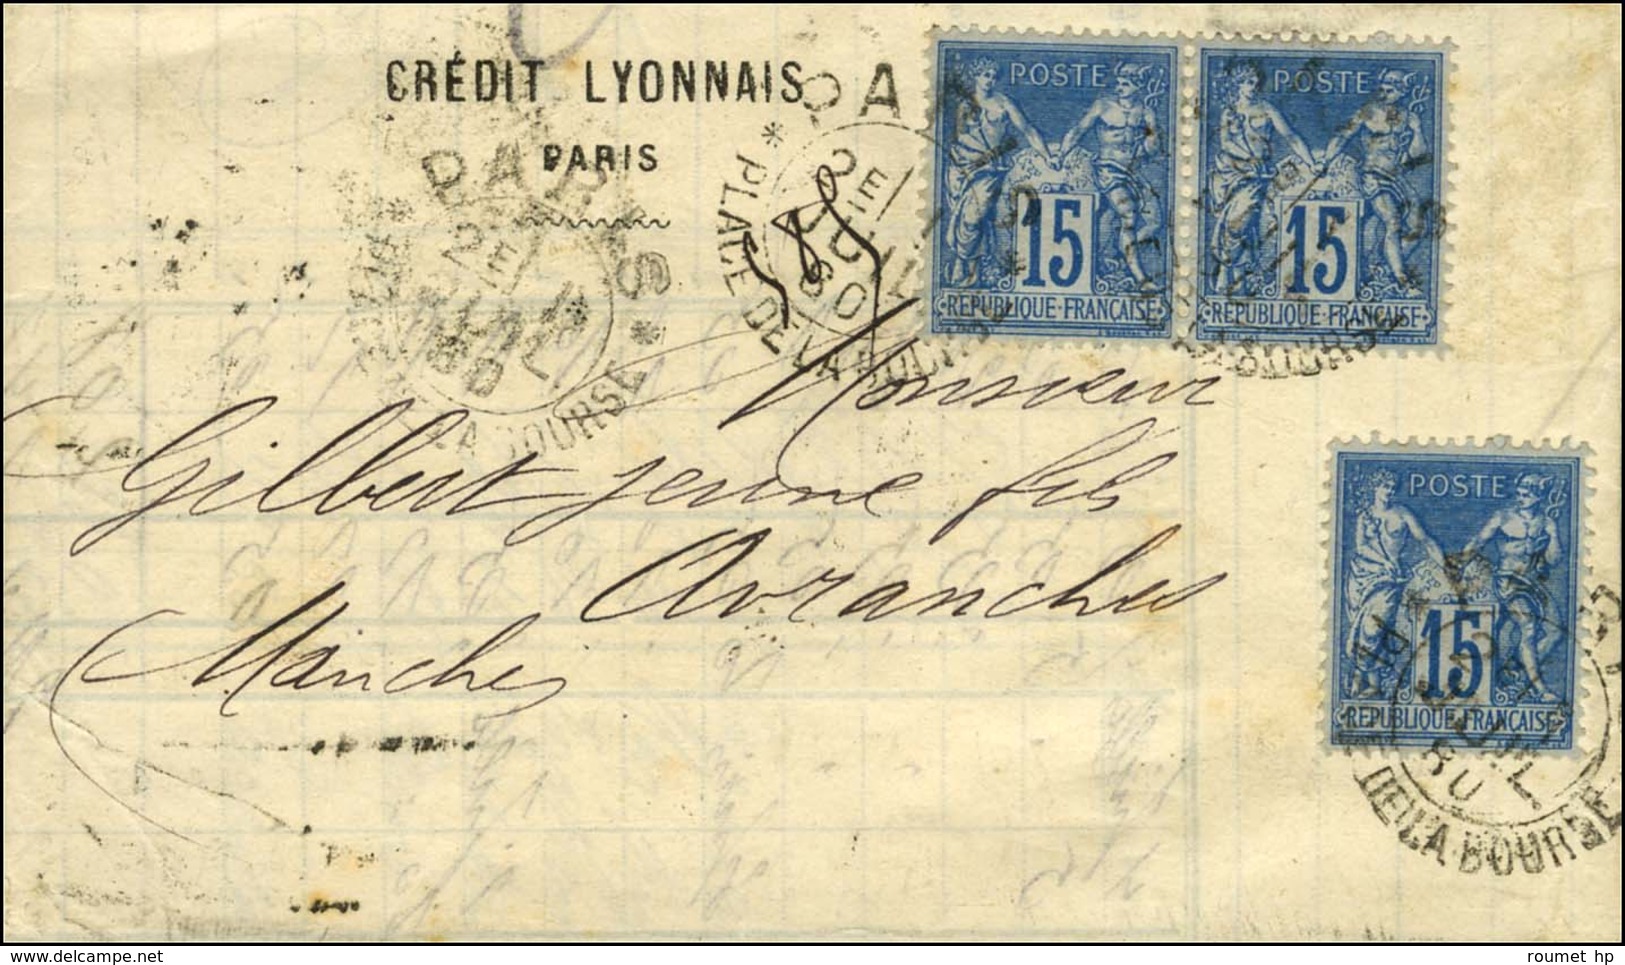 Càd D'essai PARIS / PLACE DE LA BOURSE Type 2 / N° 90 (3) Sur Lettre 3 Ports Pour Avranches. 1880. - TB. - 1876-1878 Sage (Type I)